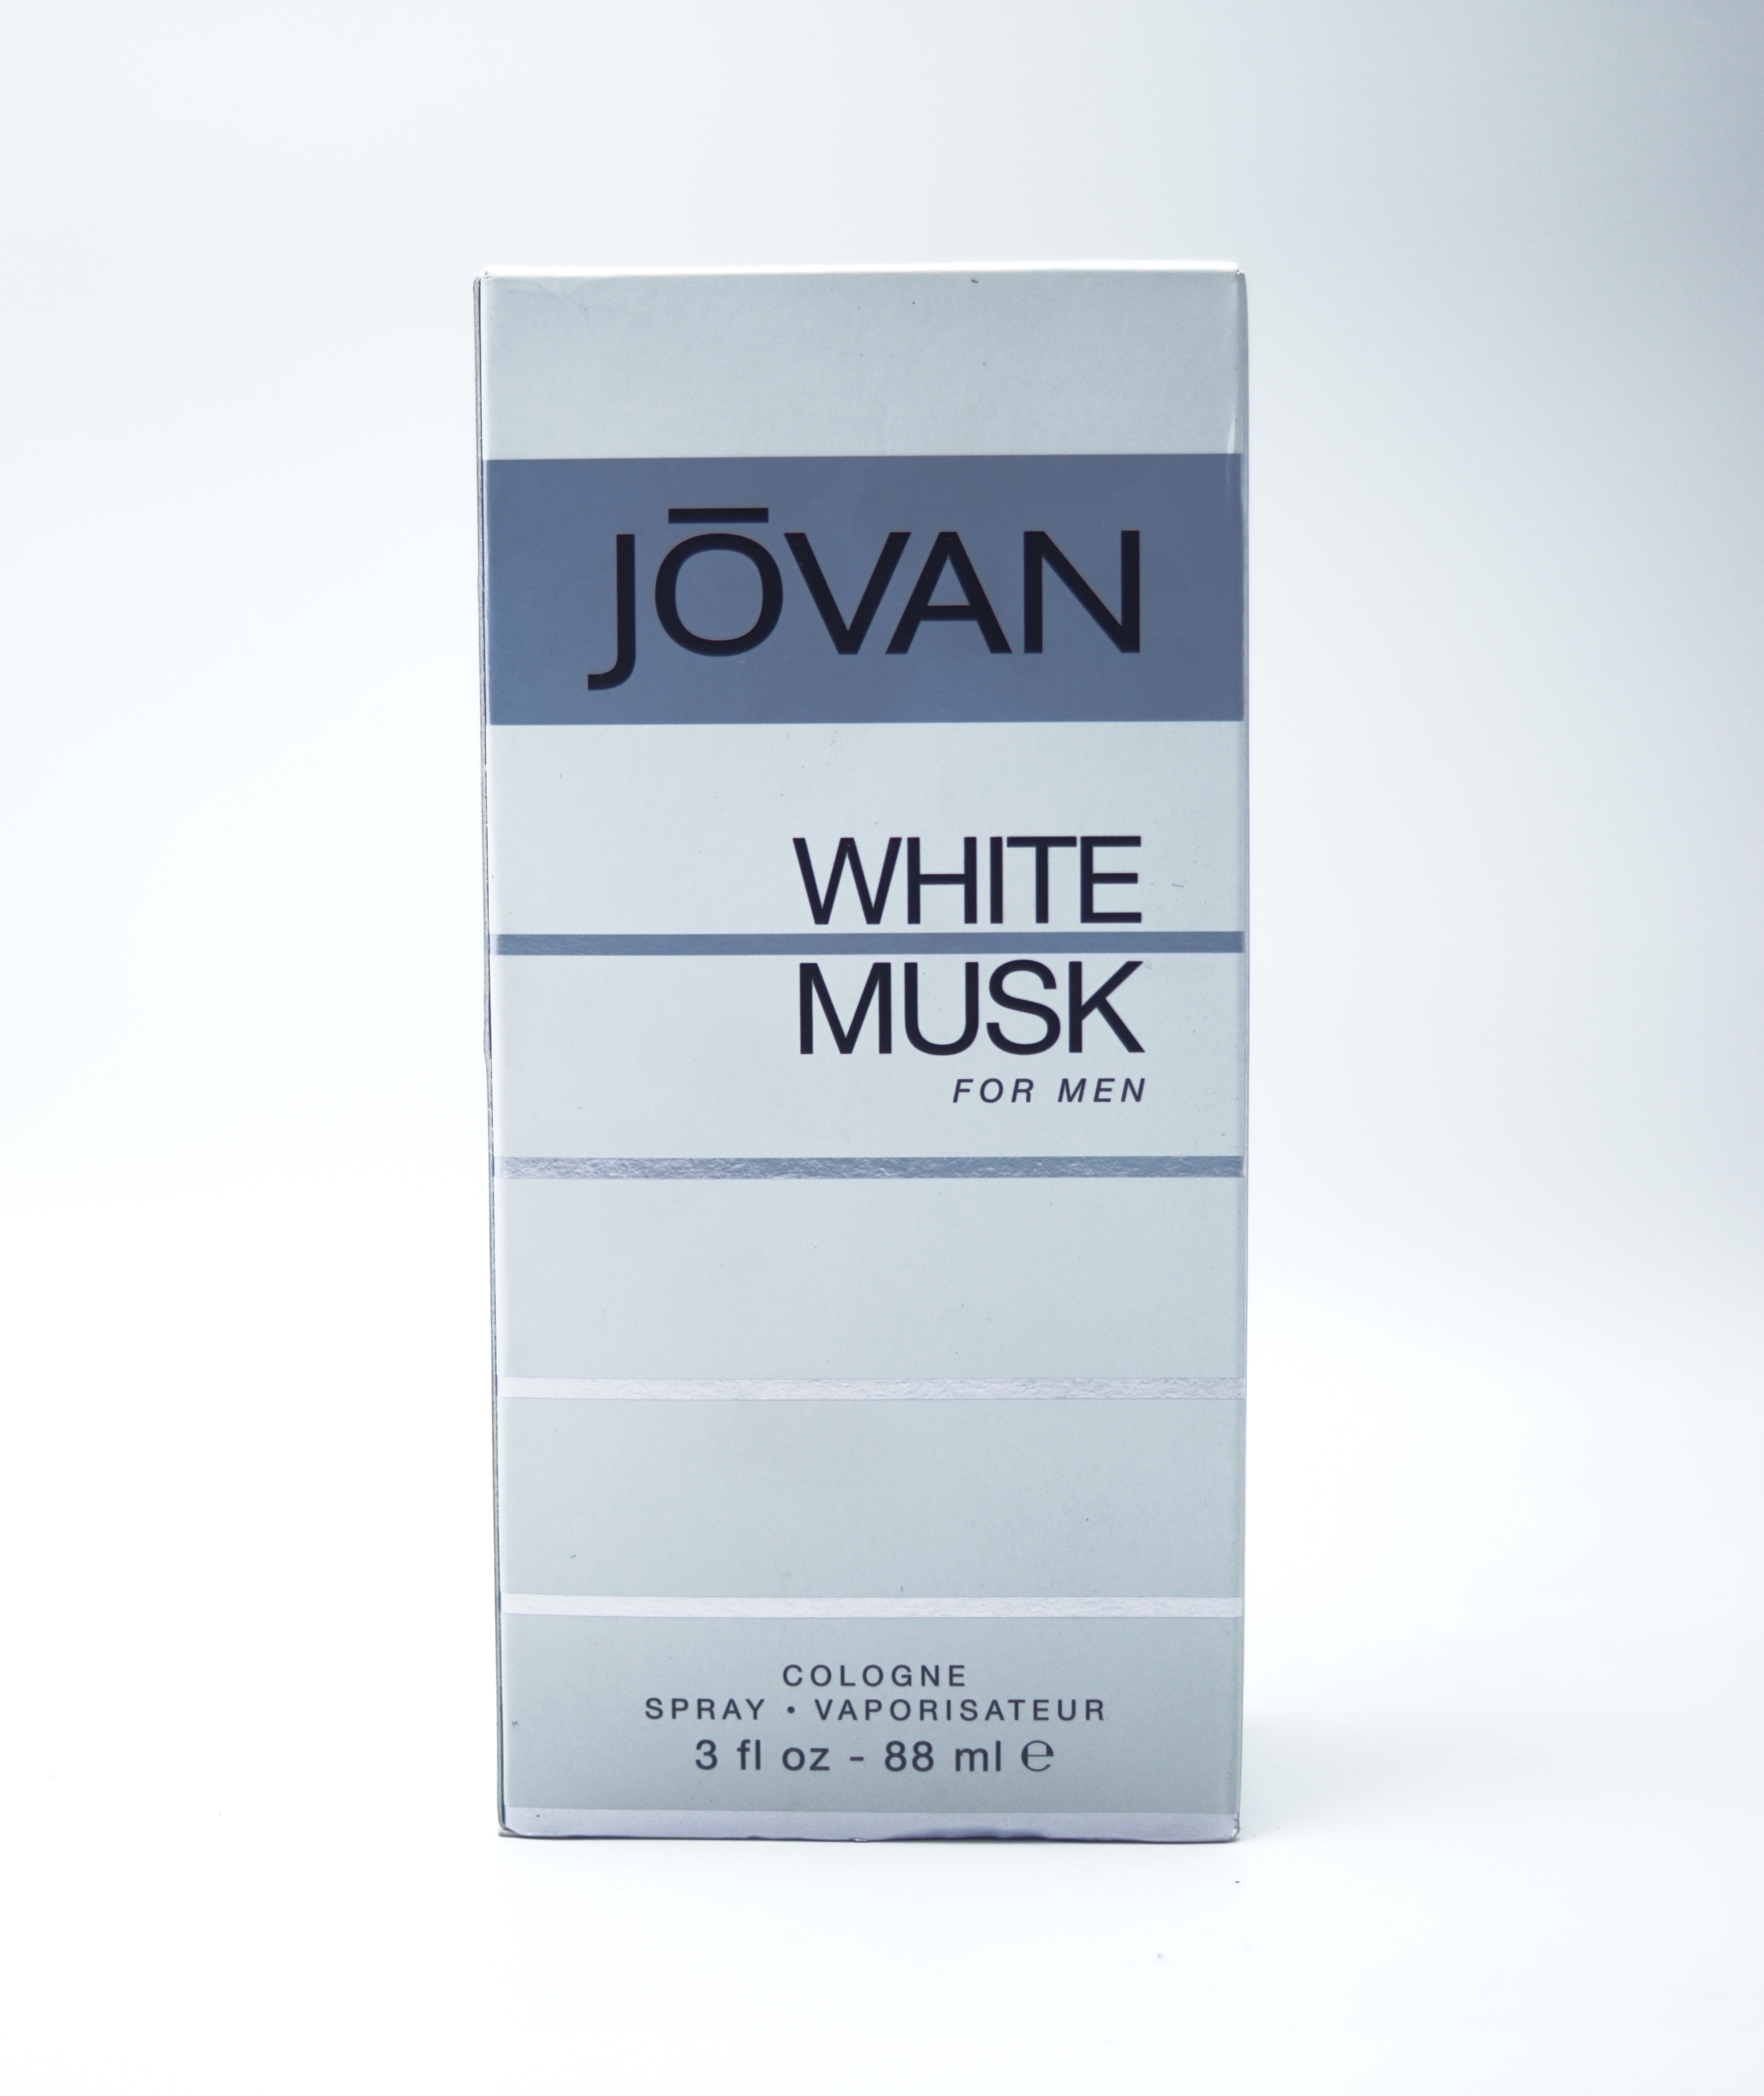 Jovan White Musk 88 ml Cologne Vaporisateur Spray  Perfume For Men SKU 96801